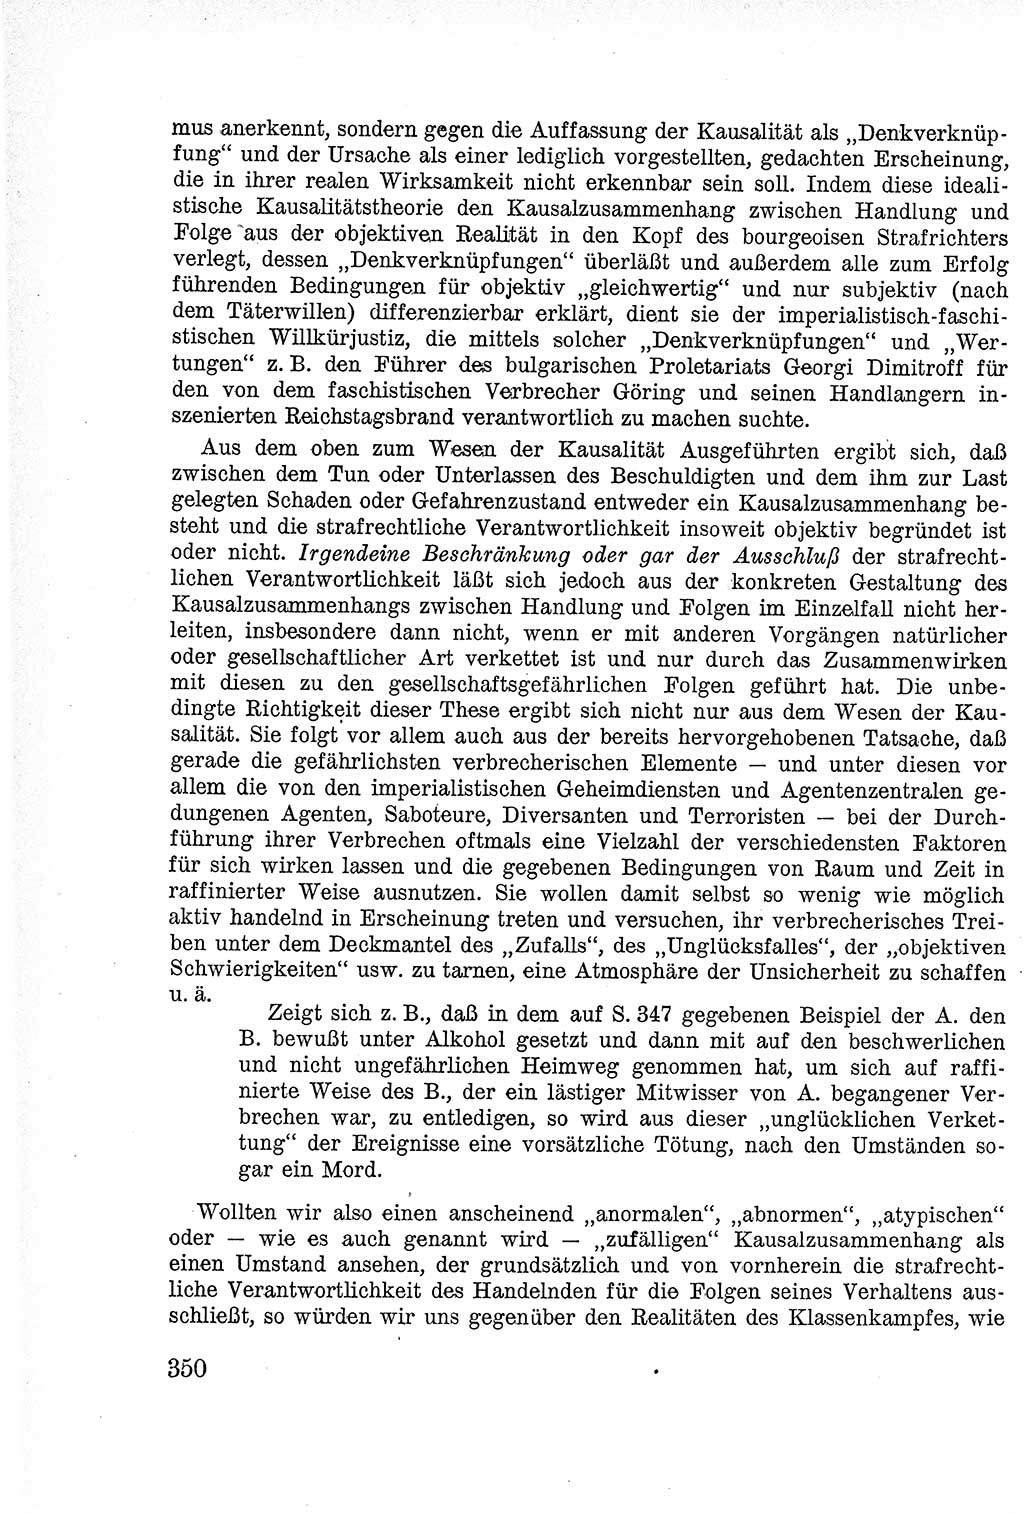 Lehrbuch des Strafrechts der Deutschen Demokratischen Republik (DDR), Allgemeiner Teil 1957, Seite 350 (Lb. Strafr. DDR AT 1957, S. 350)